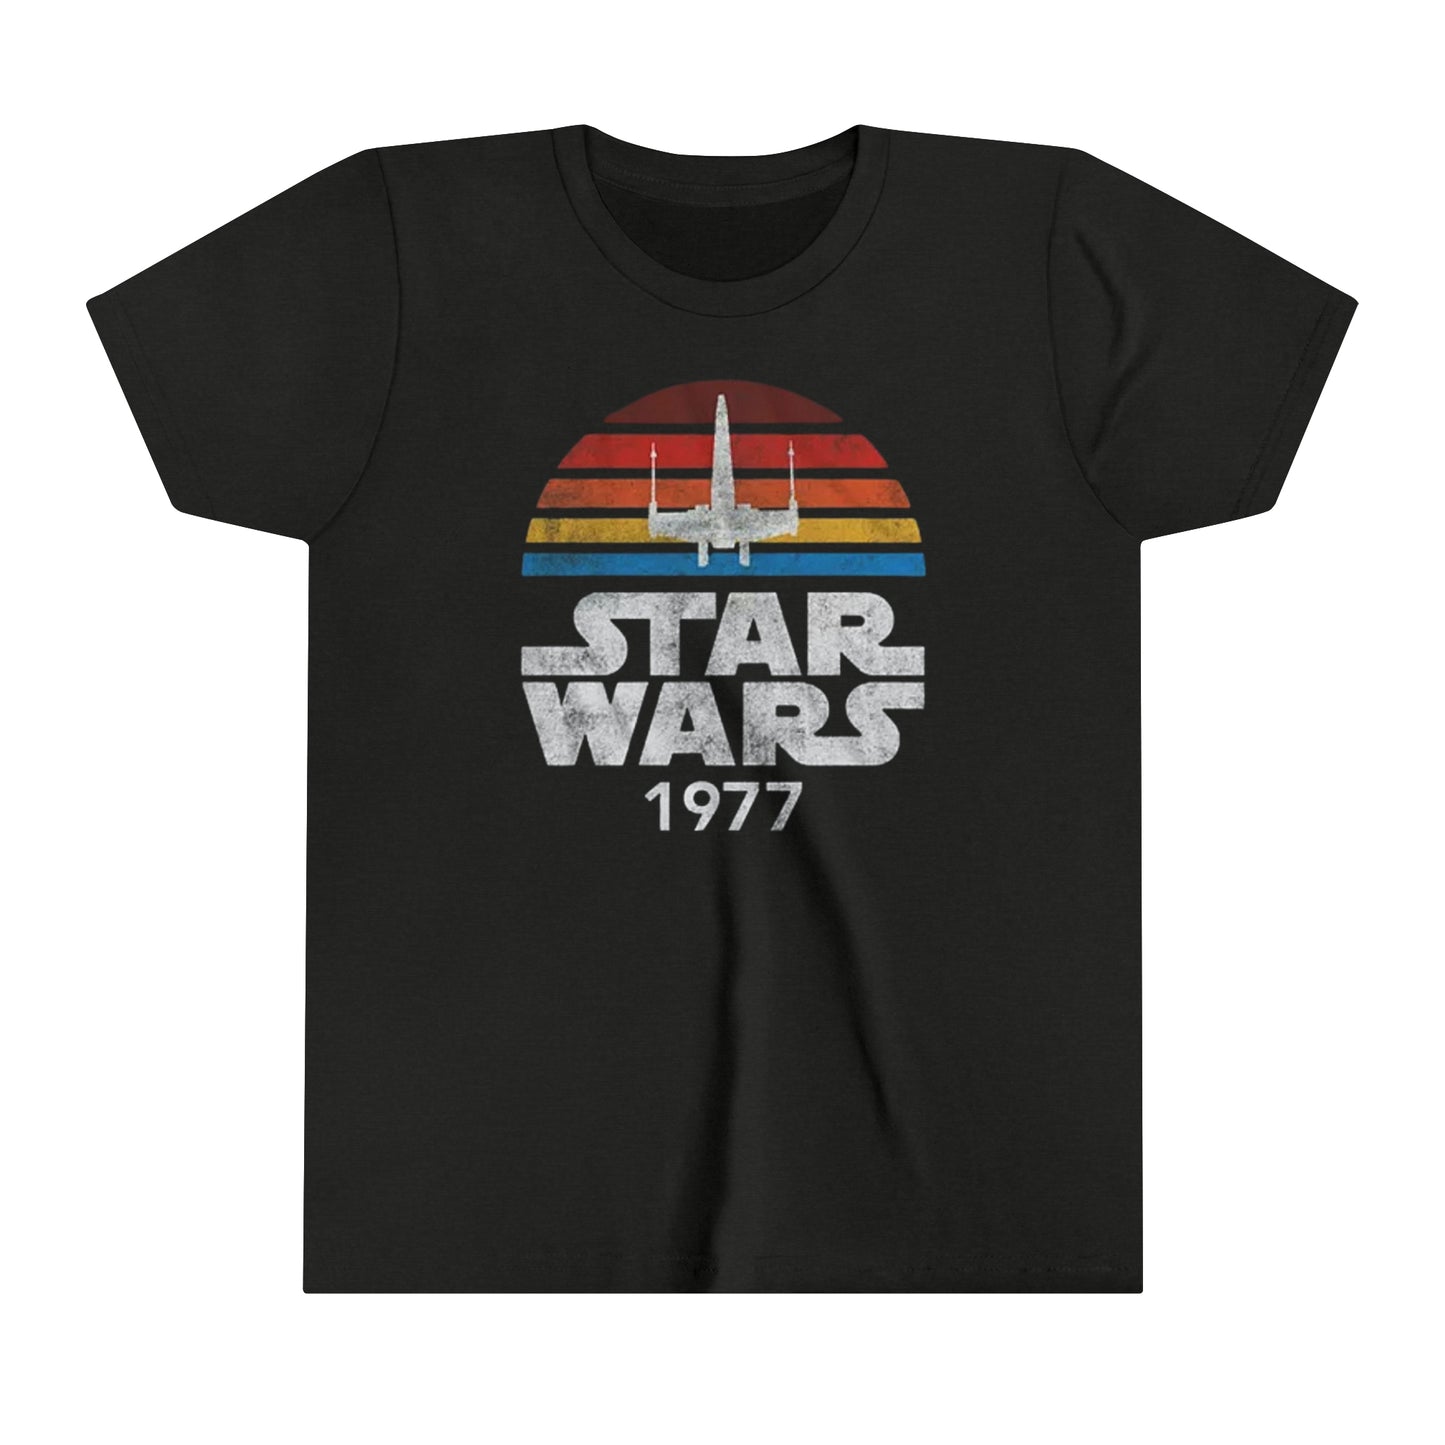 Star Wars 1977 - Youth Short Sleeve Tee